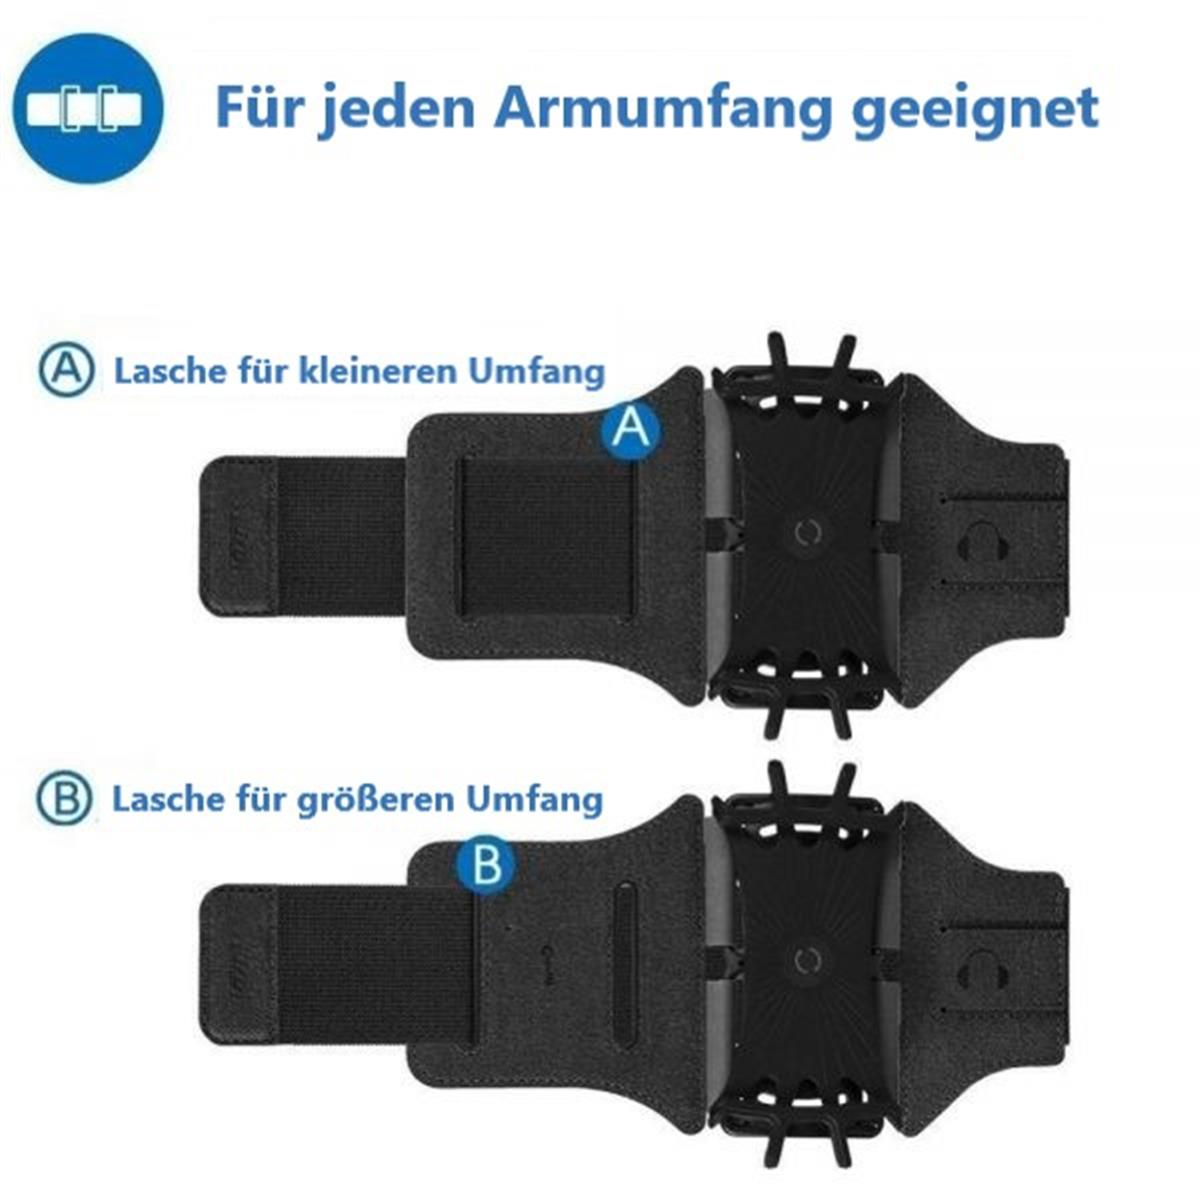 COVERKINGZ Universal Armtasche, Handymodelle, versch. Sportarmband, Hersteller, Grün